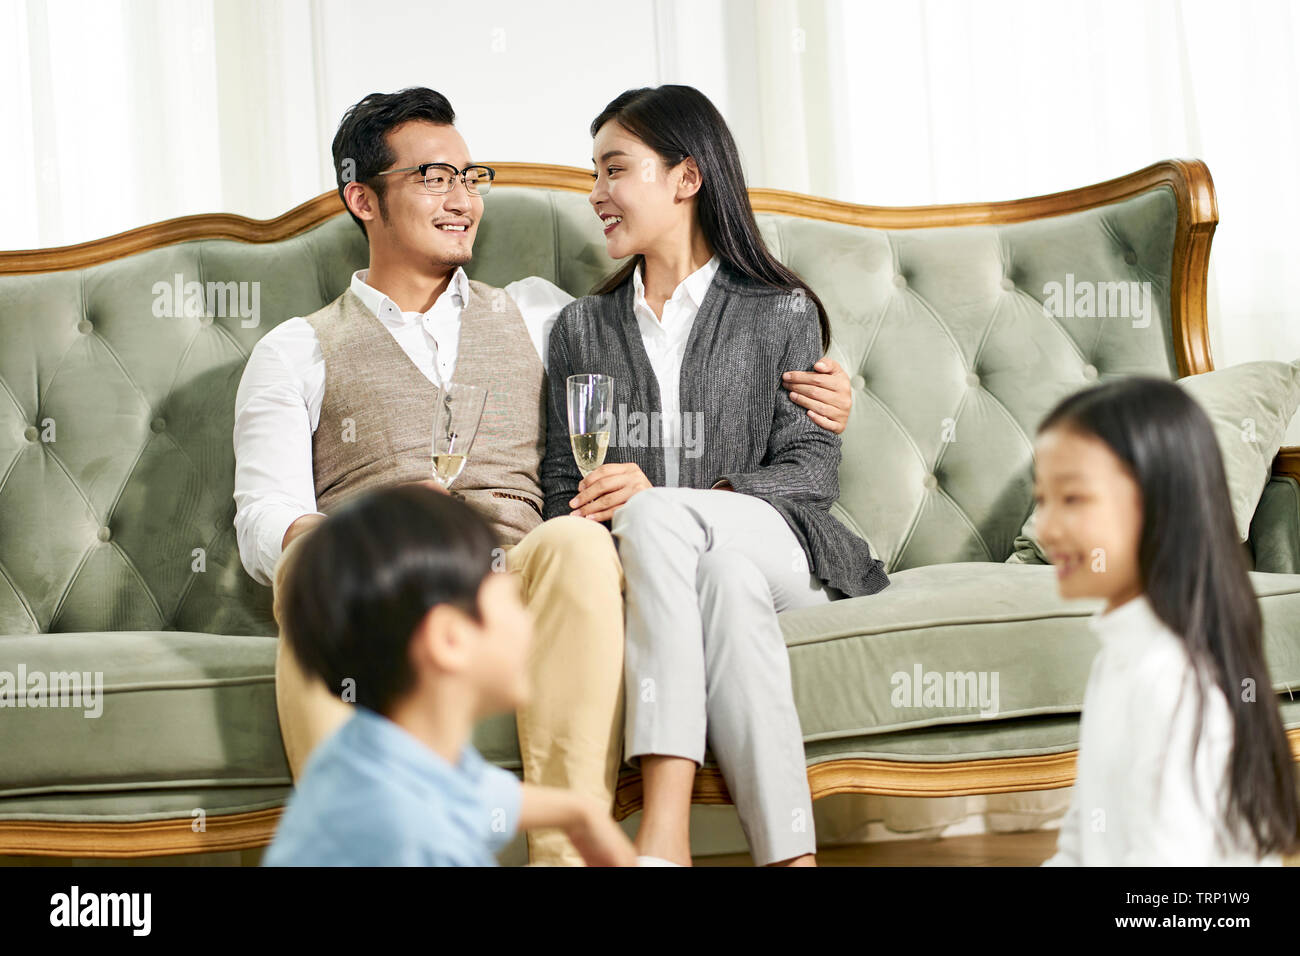 Frère et soeur asiatique assis sur un tapis à jouer tandis que les parents de discuter en arrière-plan, l'accent sur les parents. Banque D'Images